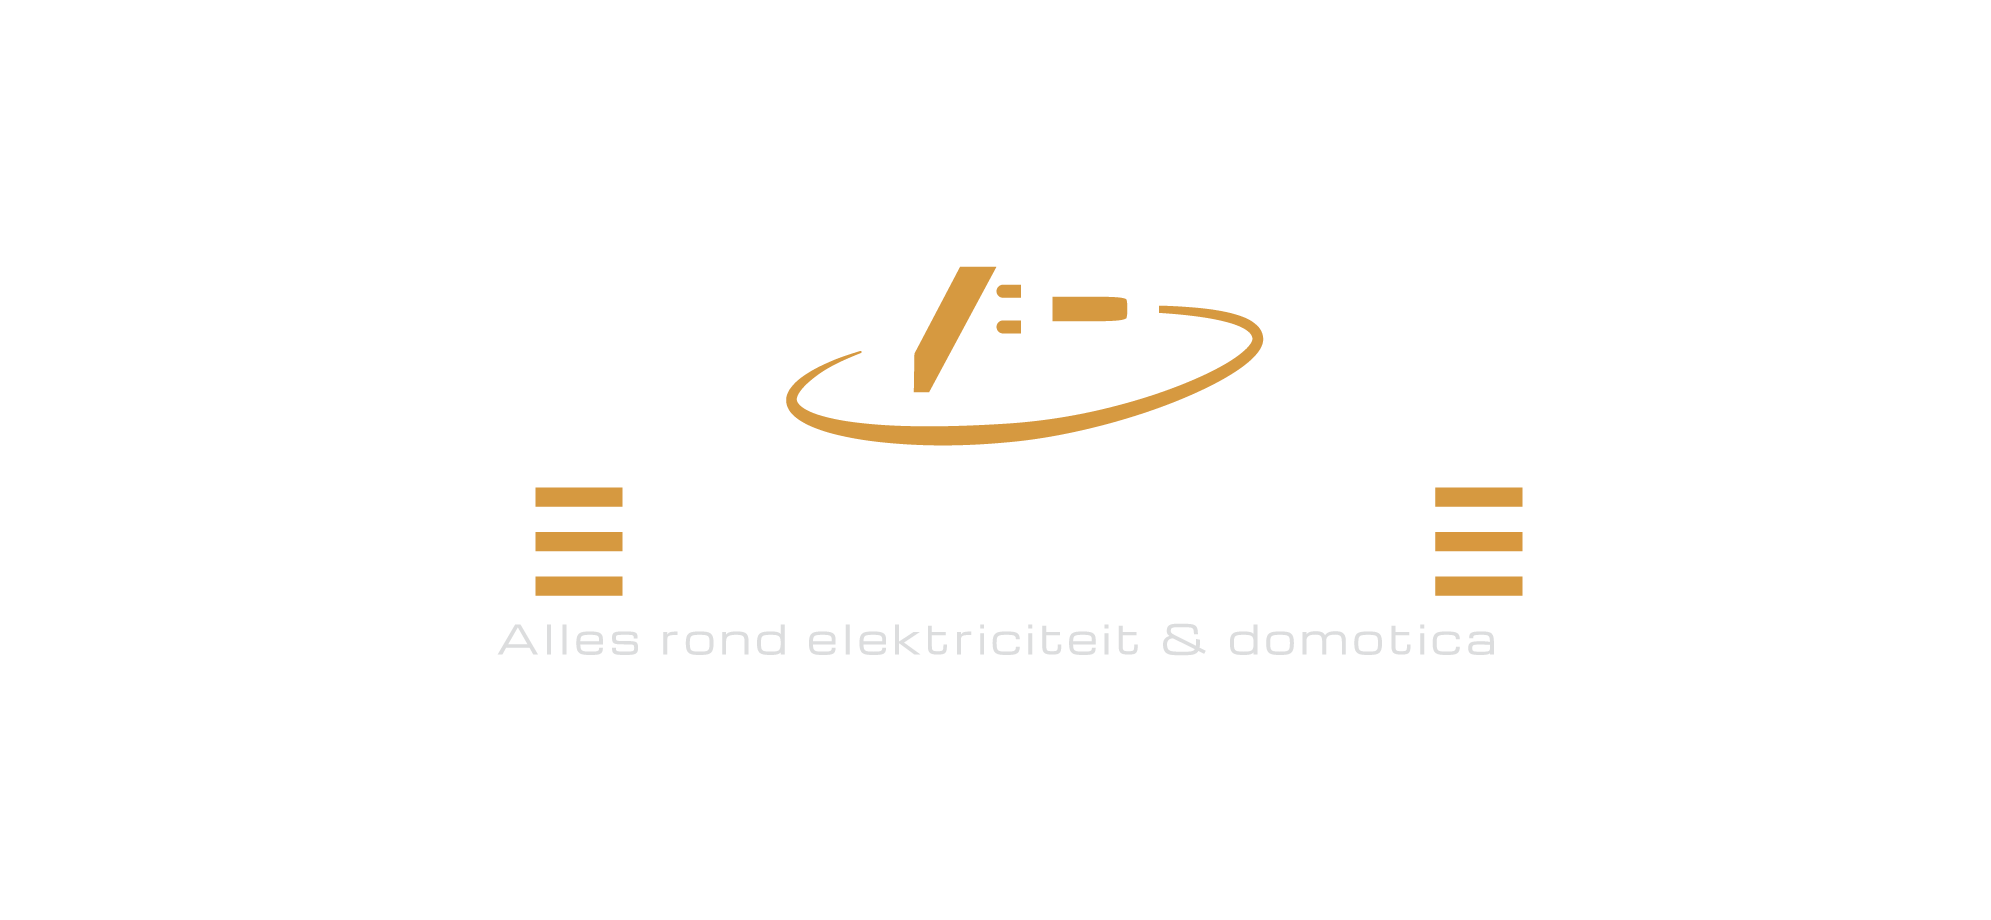 VP Elektriciteit - Elektriciteitswerken Mechelen